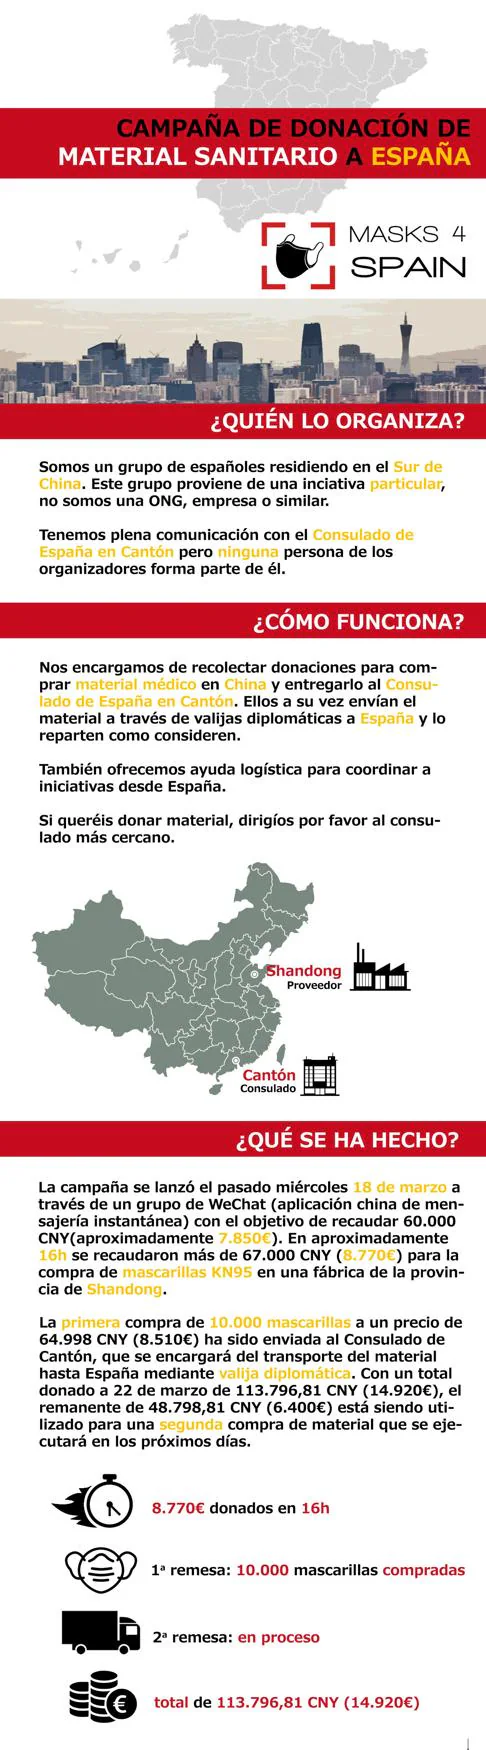 La colonia española en China se moviliza para enviar mascarillas a España